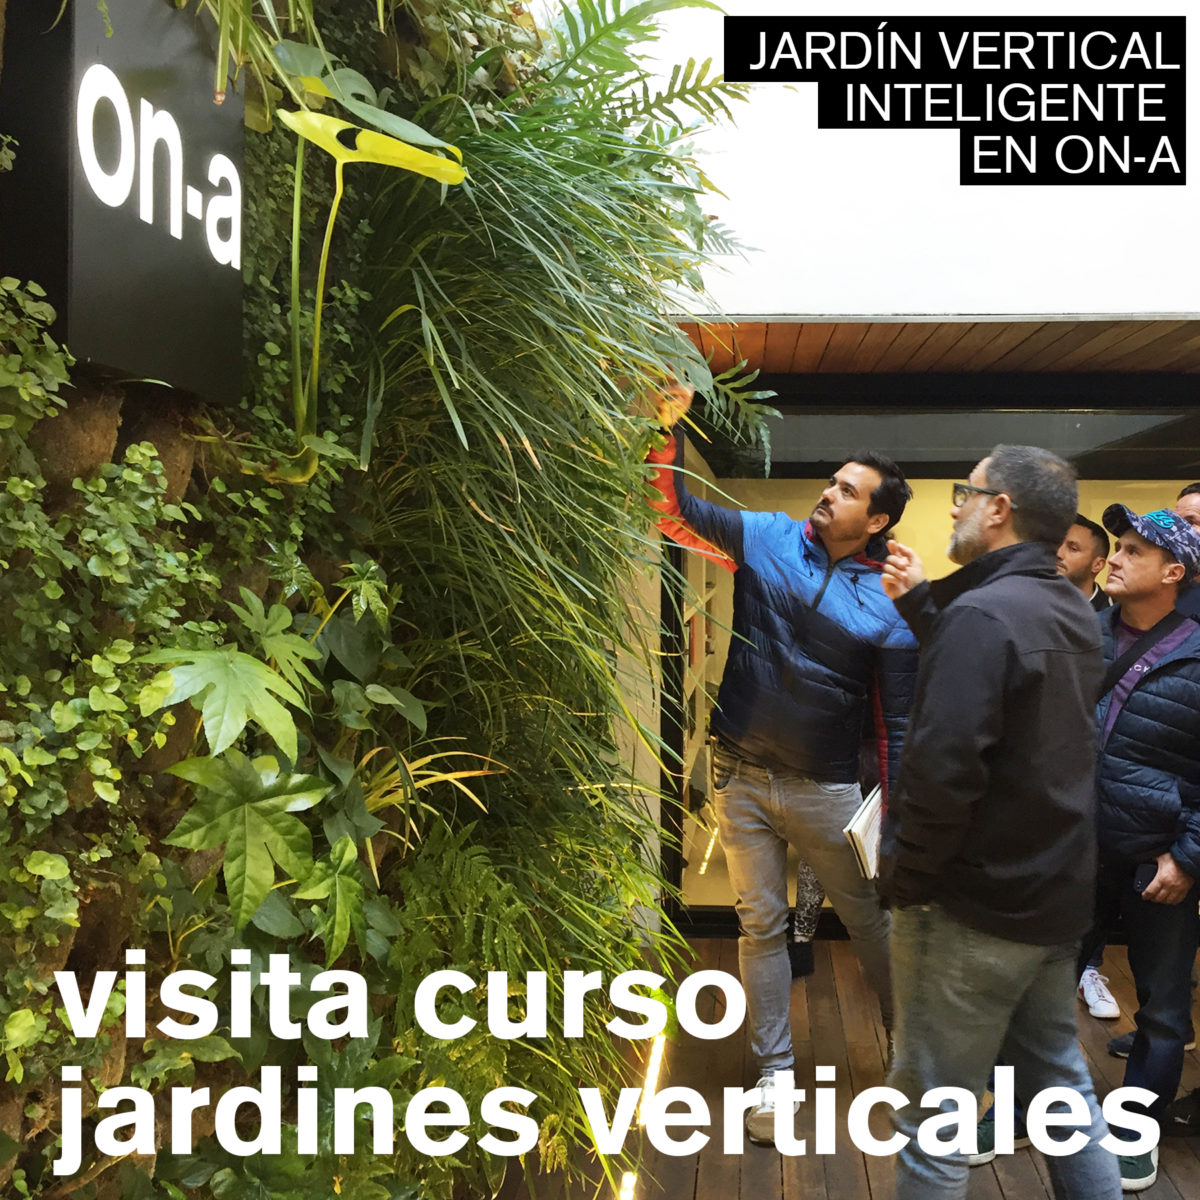 VISITA CURSO JARDINES VERTICALES A ON-A